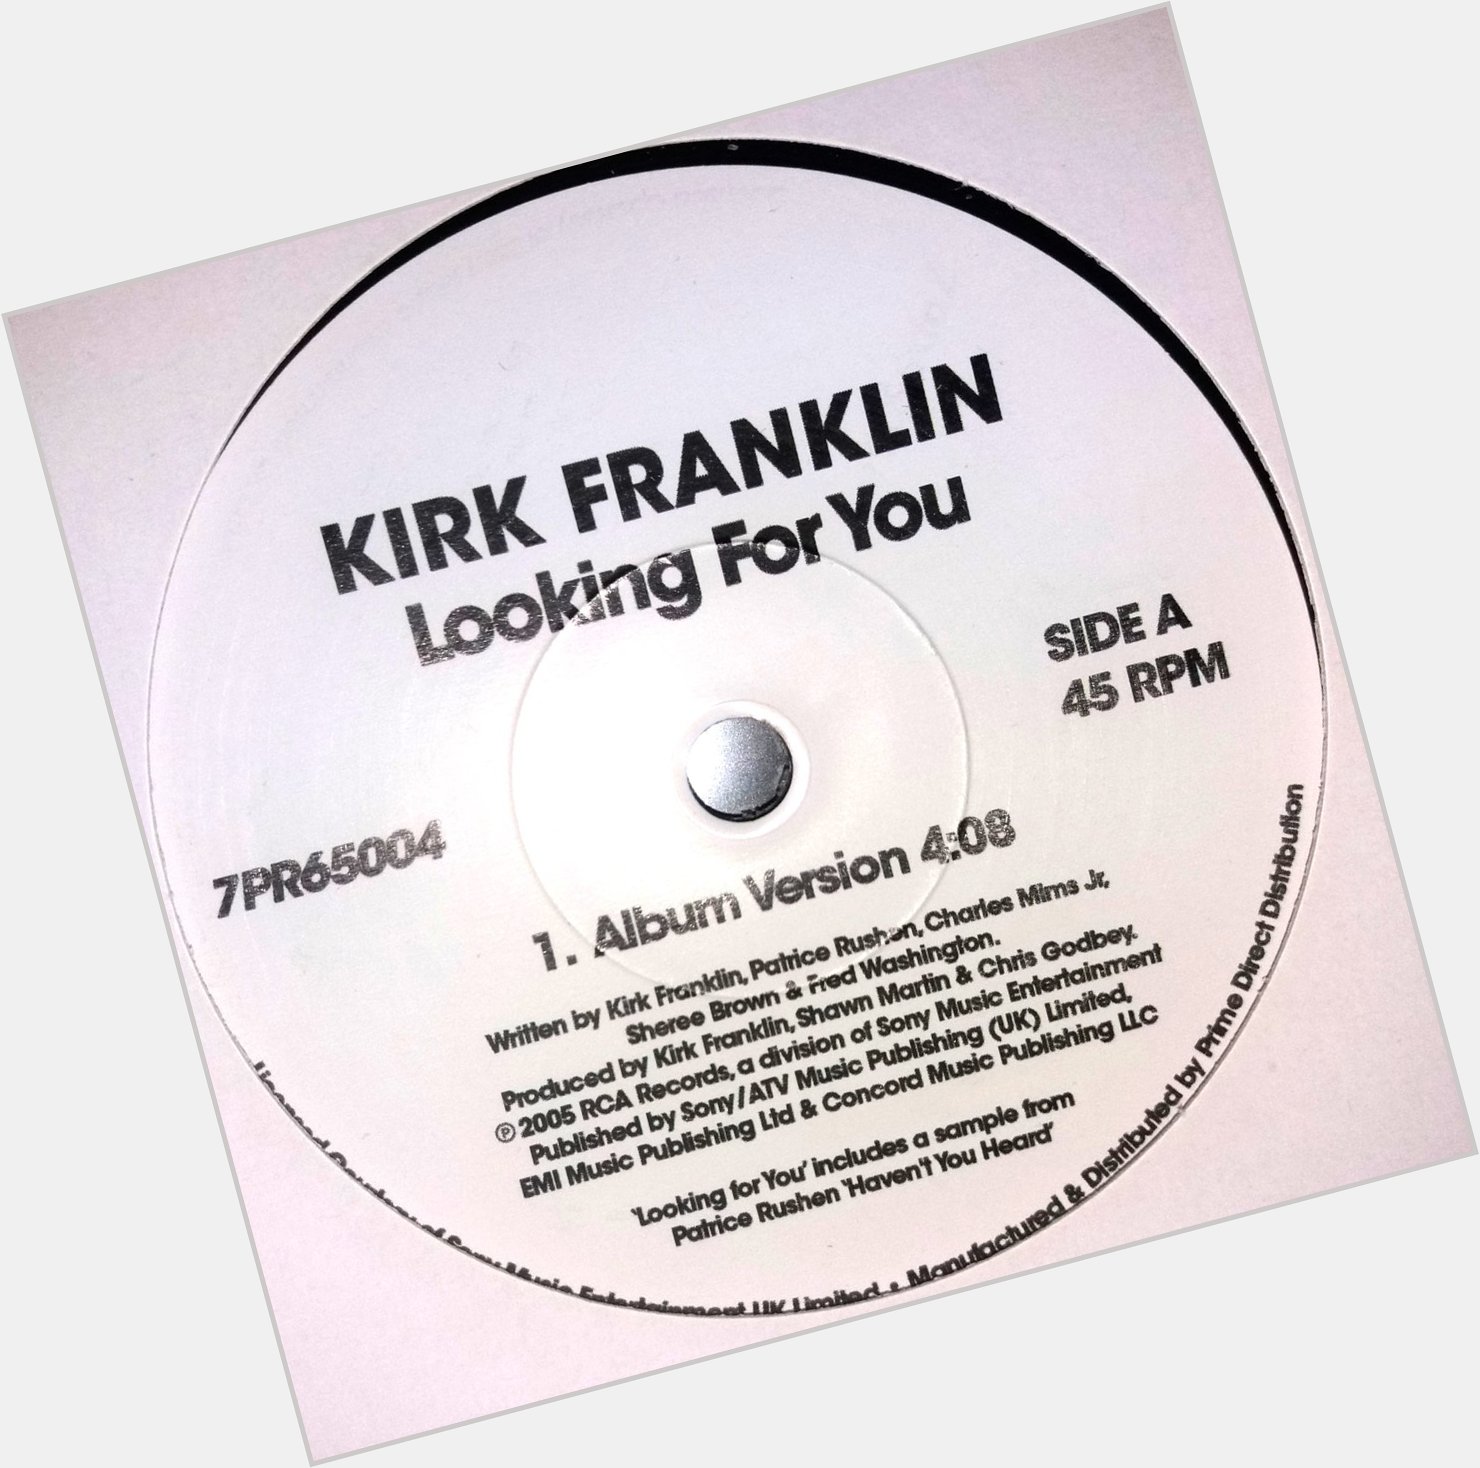 Happy Birthday to Kirk Franklin. X 